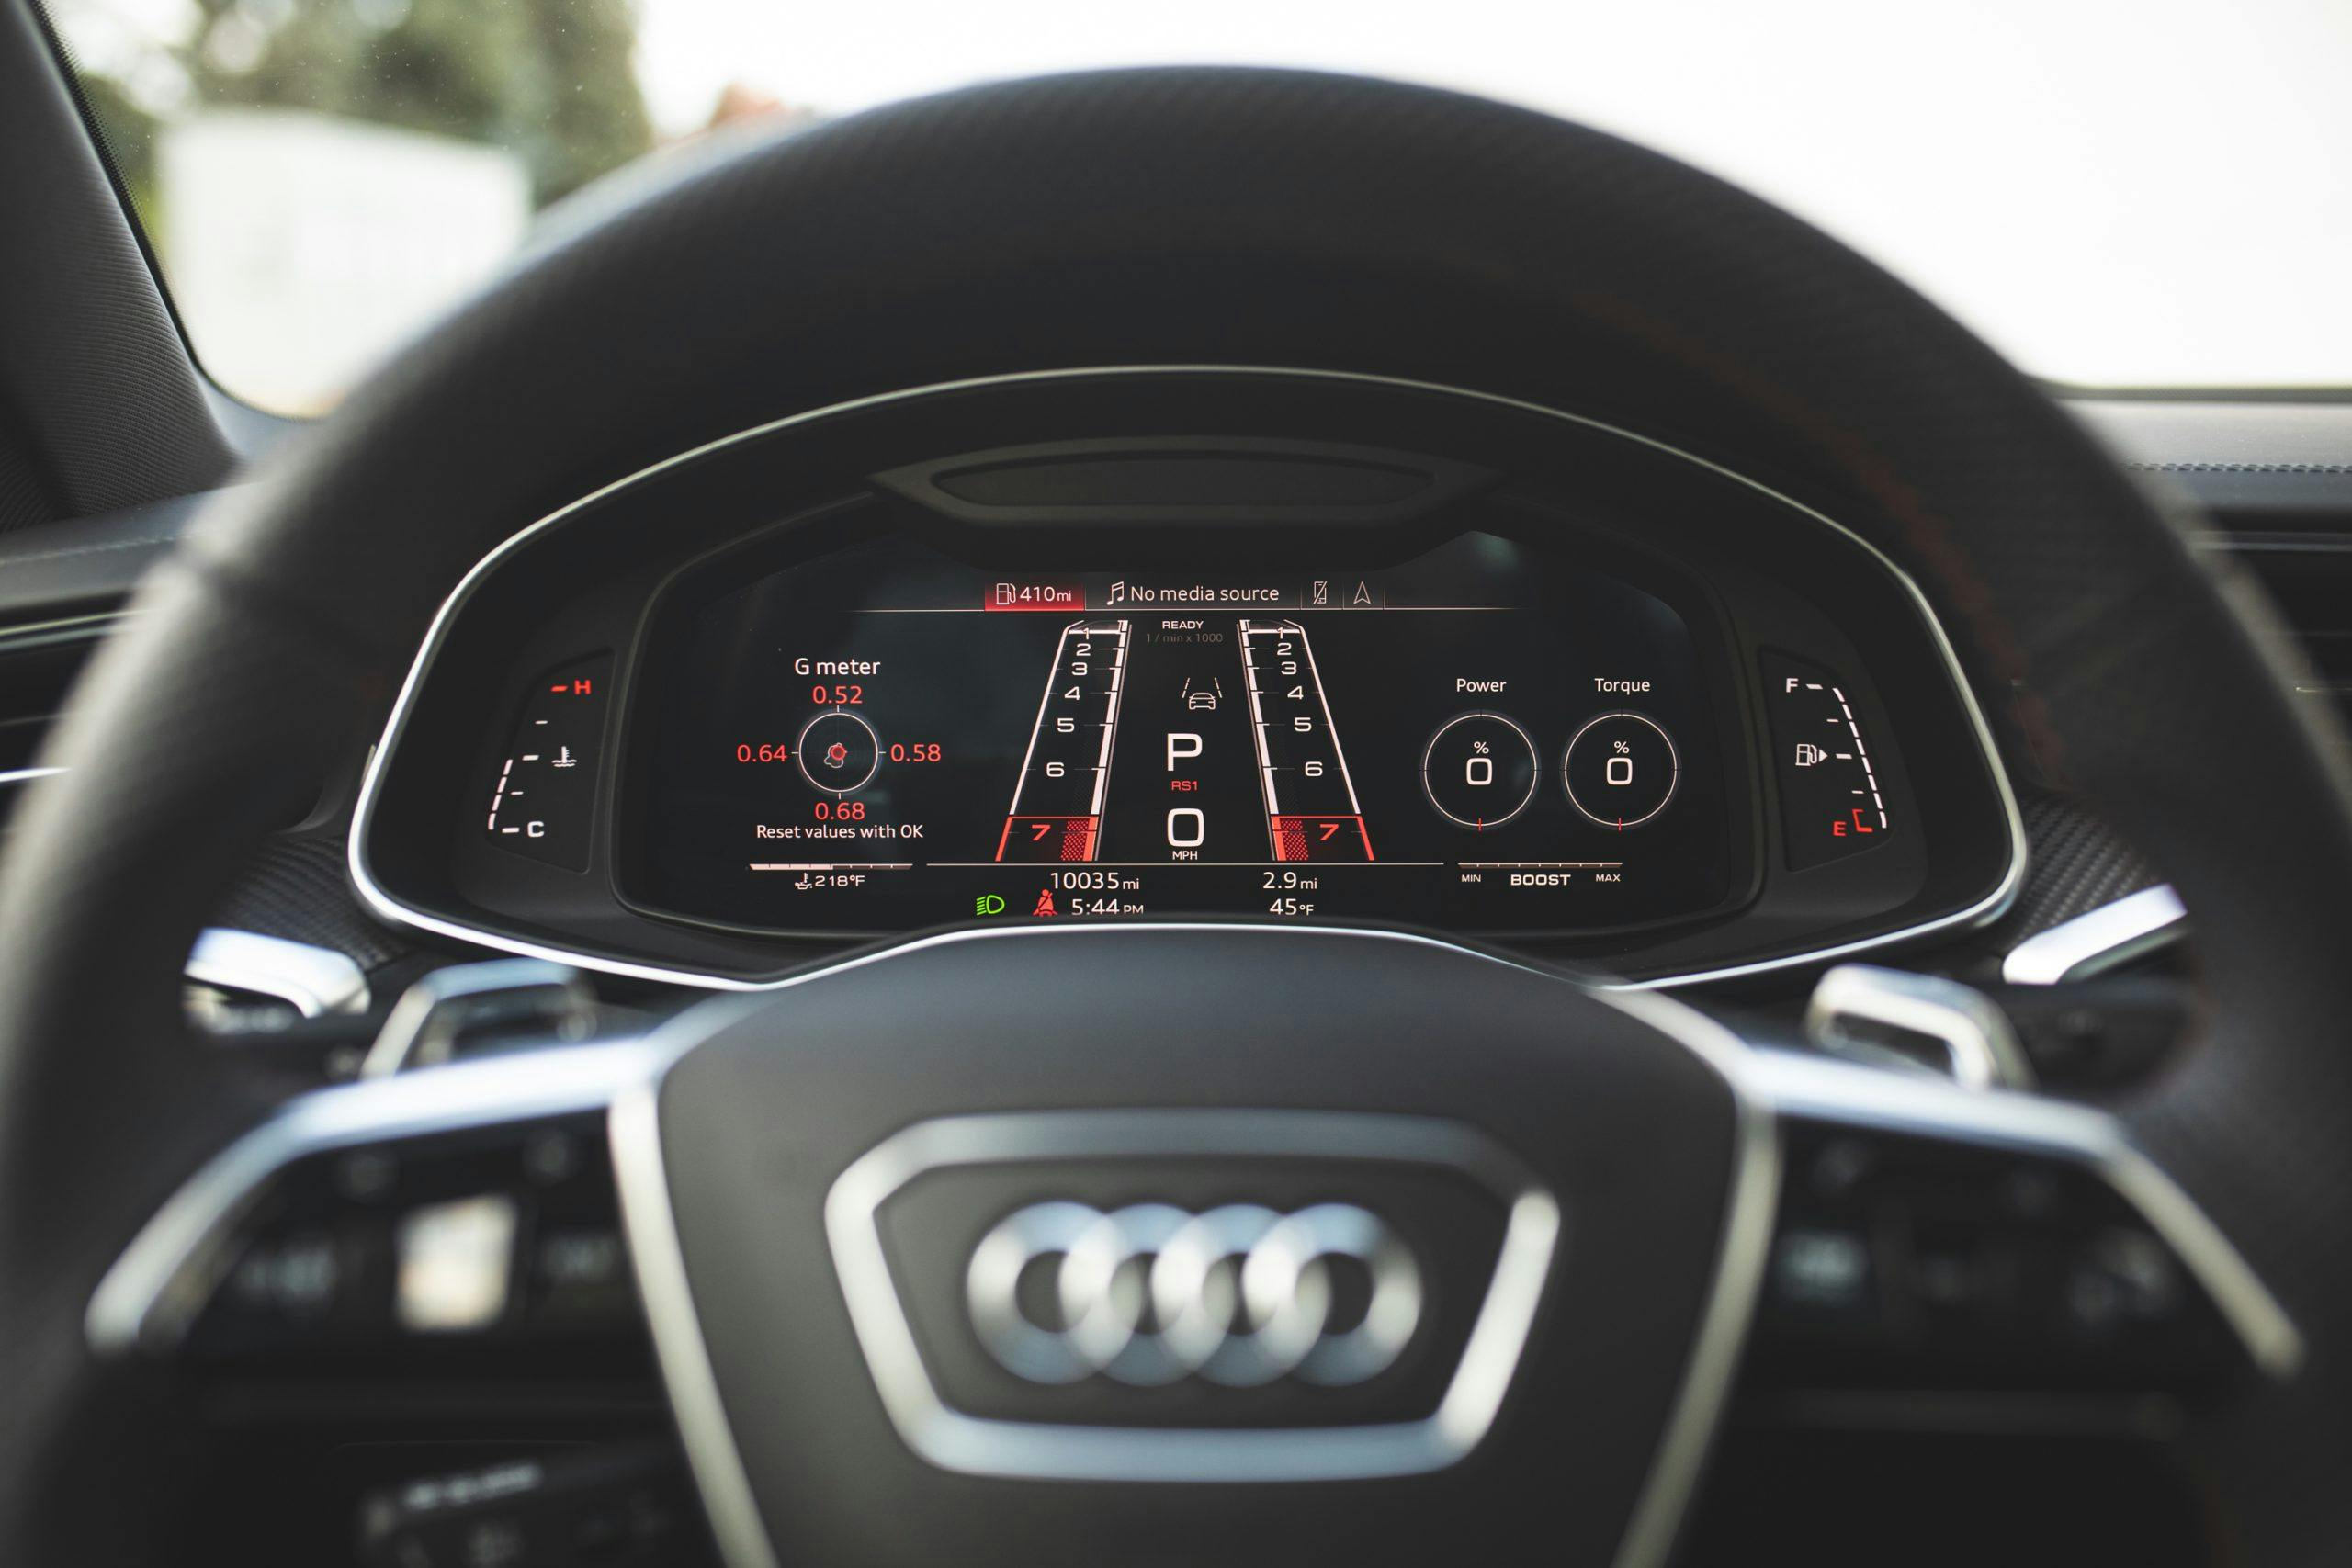 2021 Audi RS 7 interior digital dash display